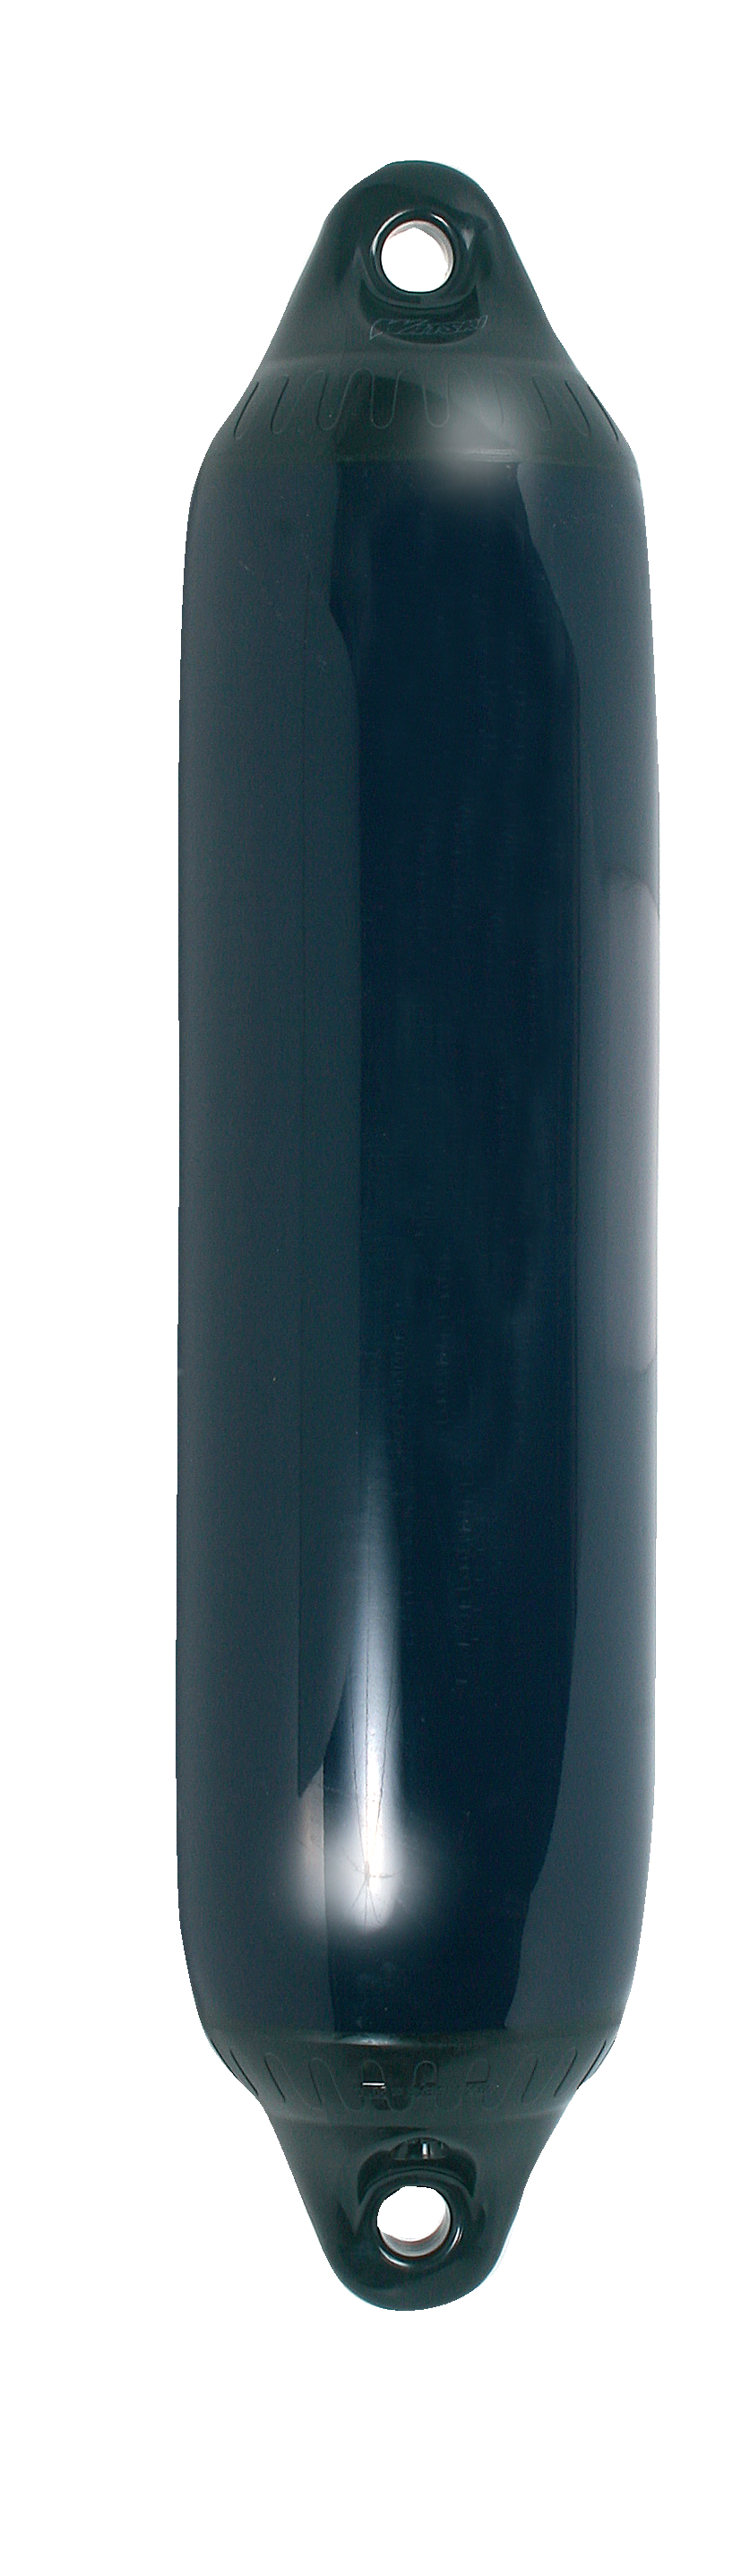 Fender F3 220x745mm Blå/svart